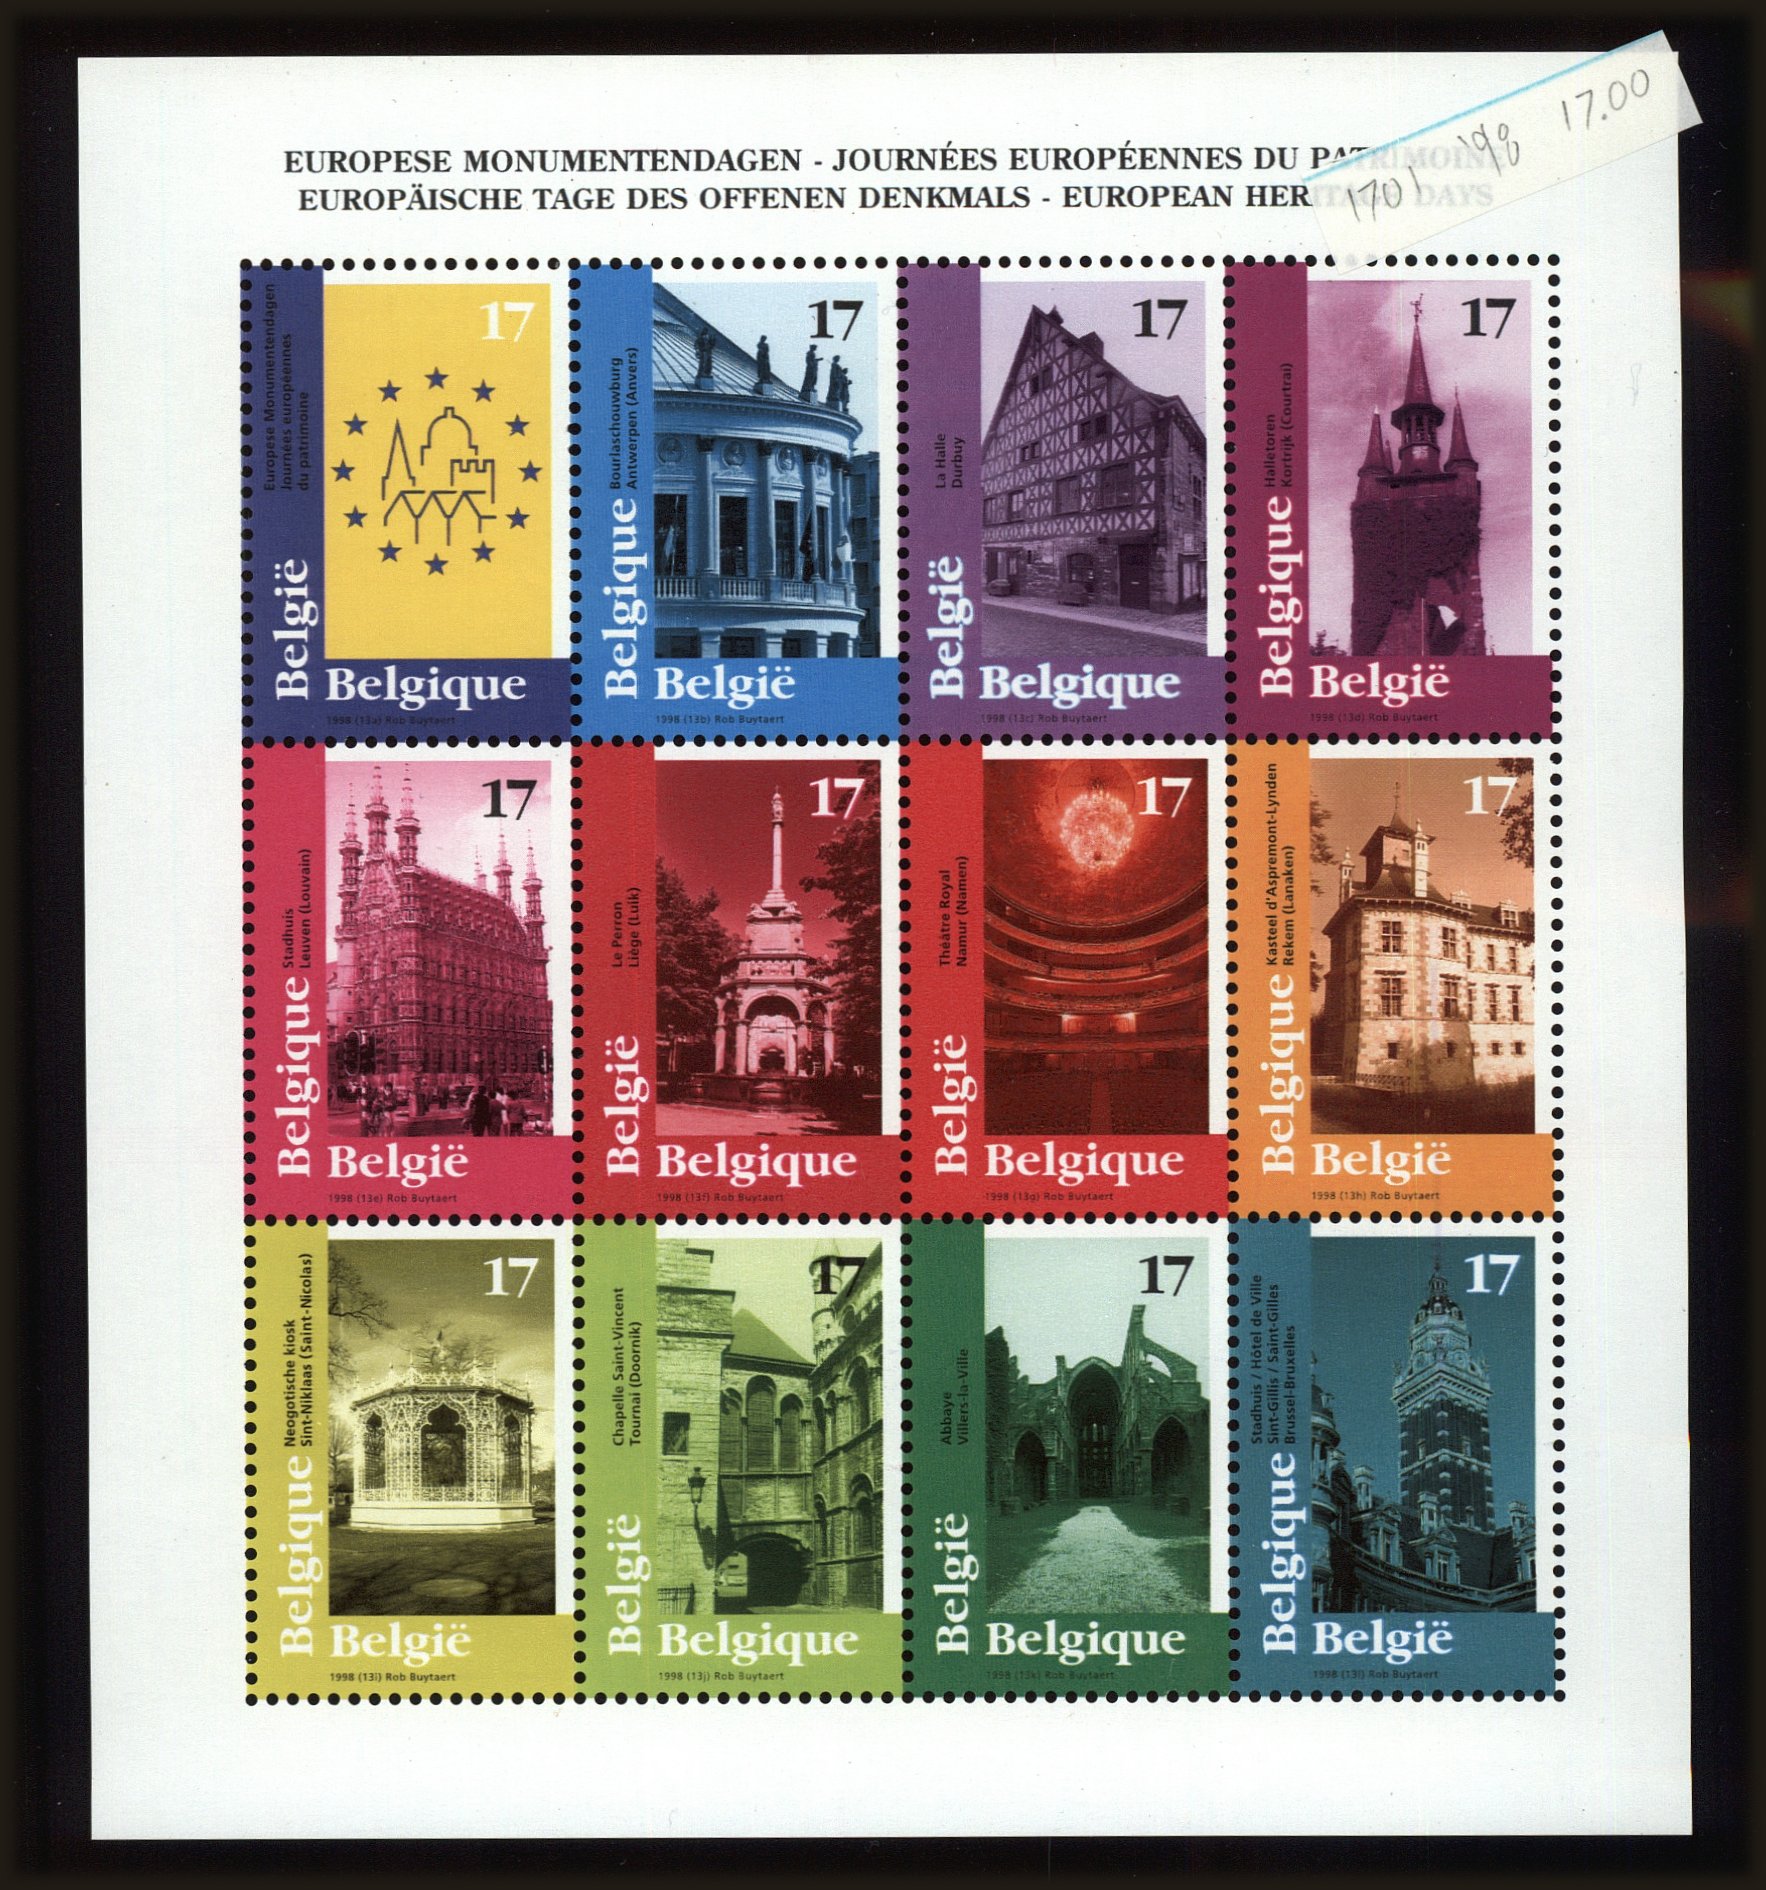 Front view of Belgium 1701 collectors stamp